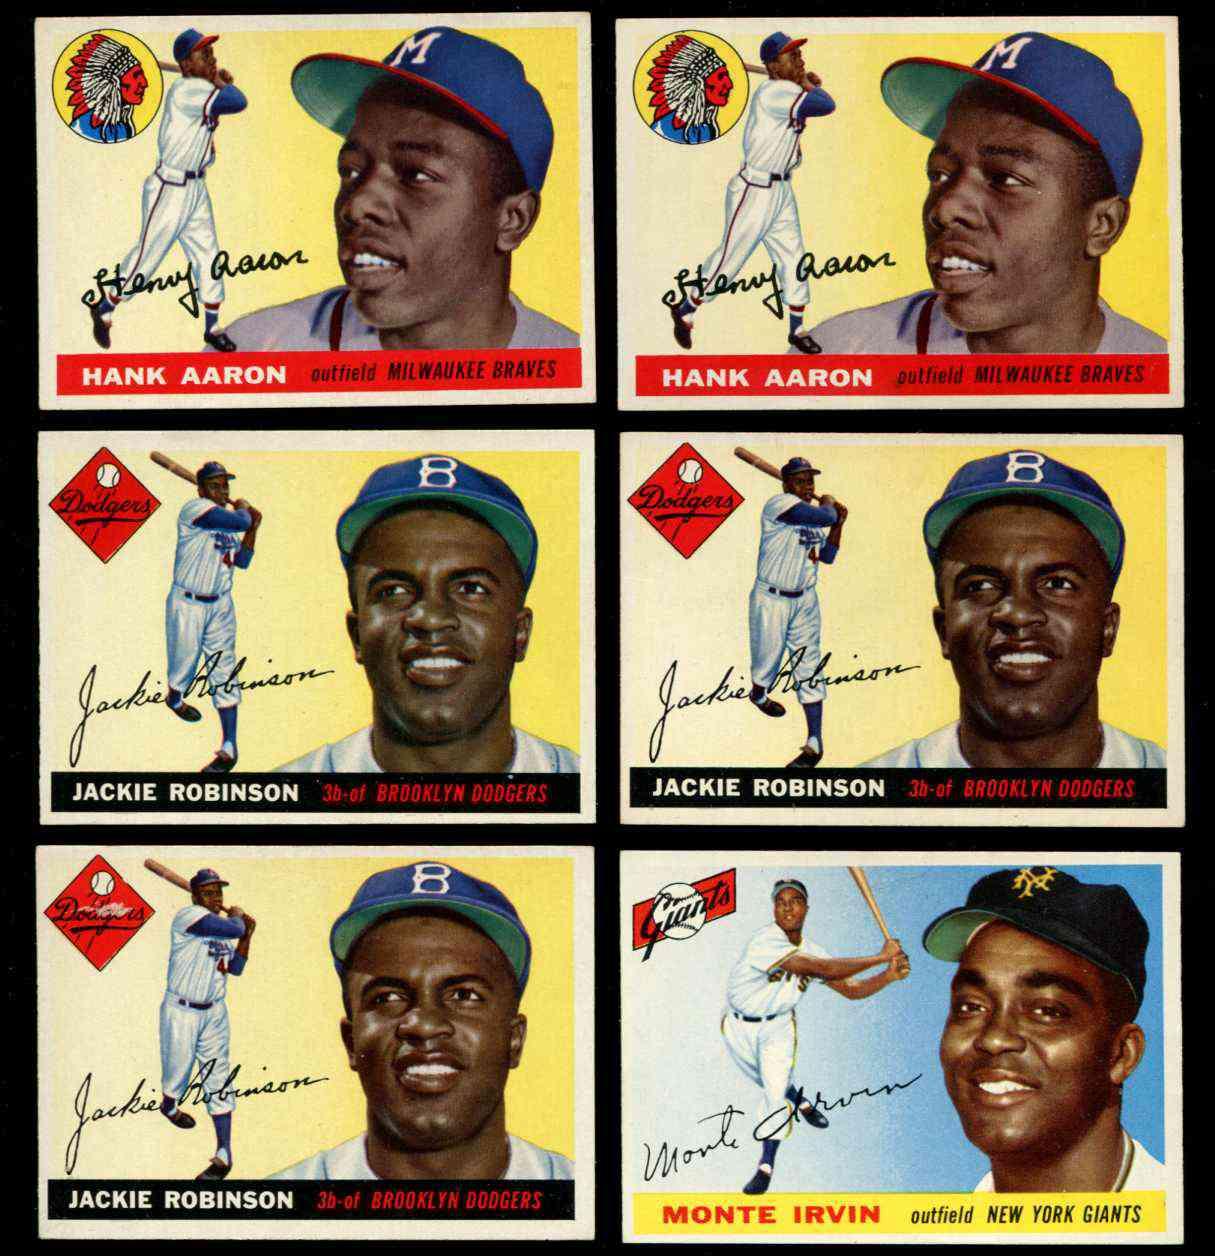 1955 Topps #100 Monte Irvin [#] (NY Giants) Baseball cards value